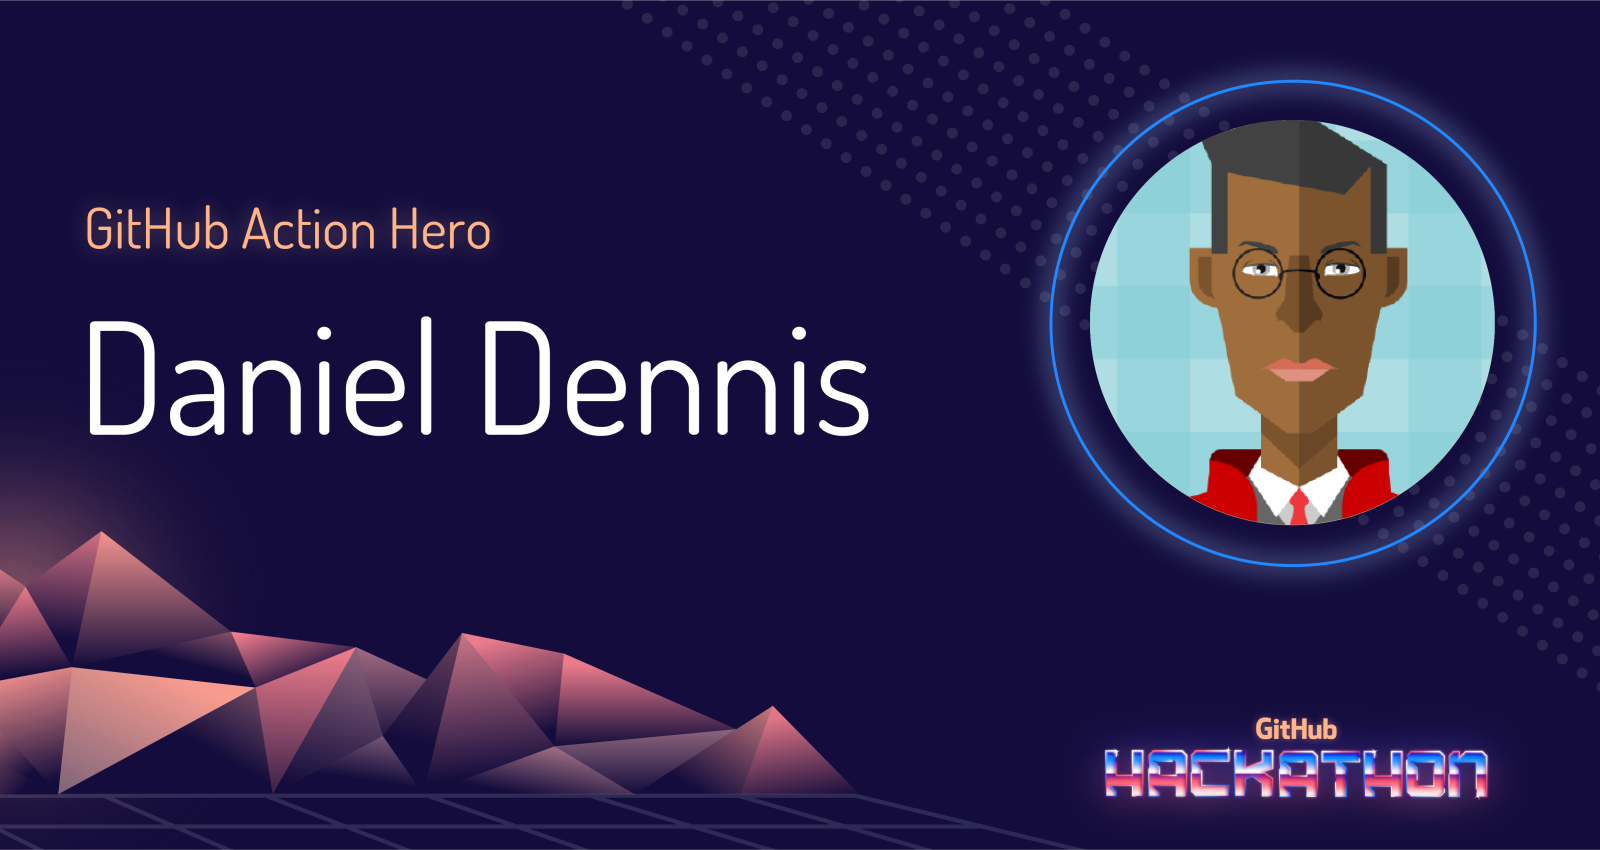 GitHub Action Hero - Daniel Dennis